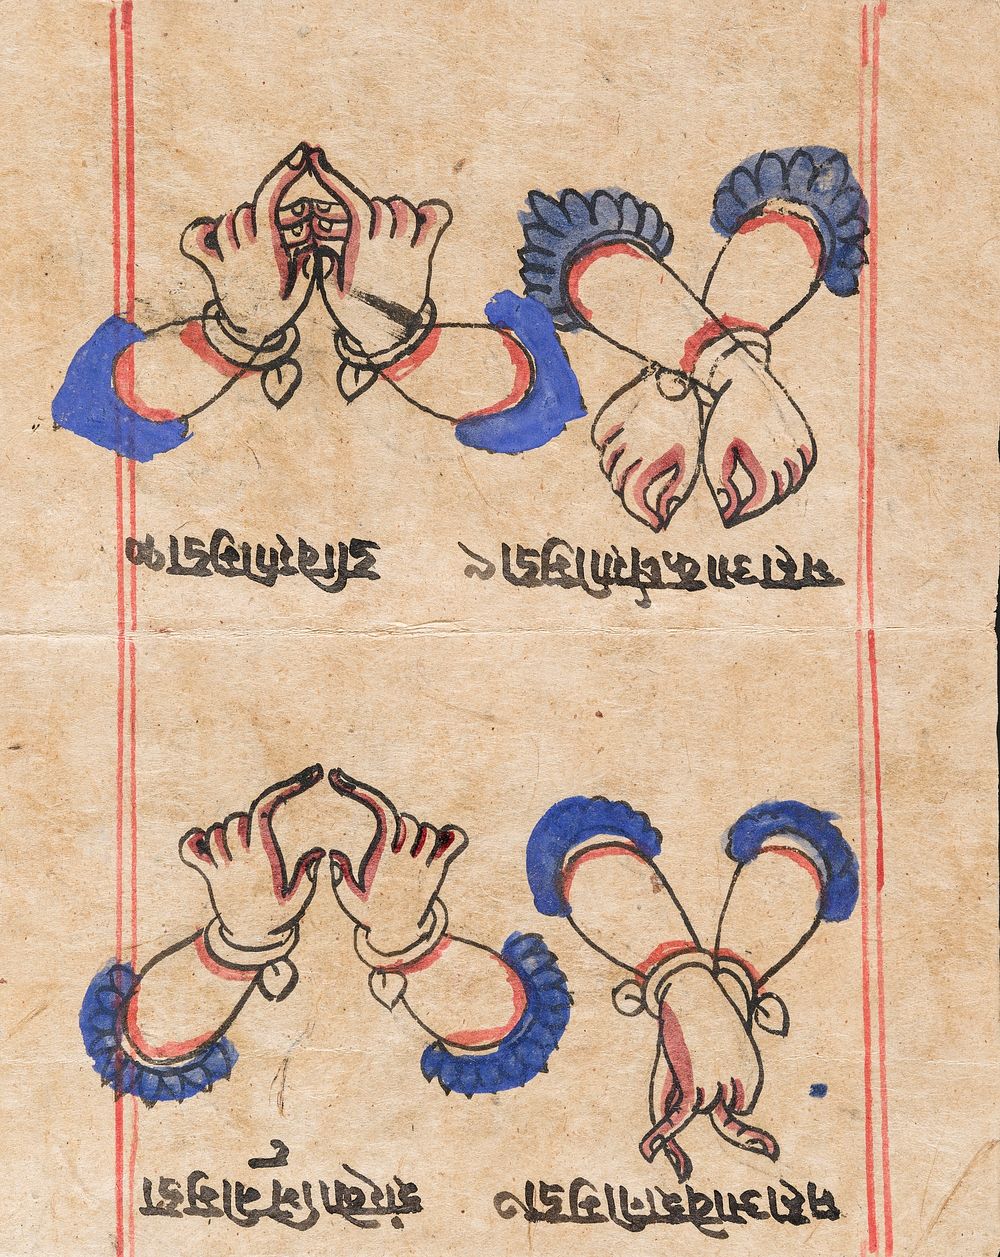 Book of Gestures